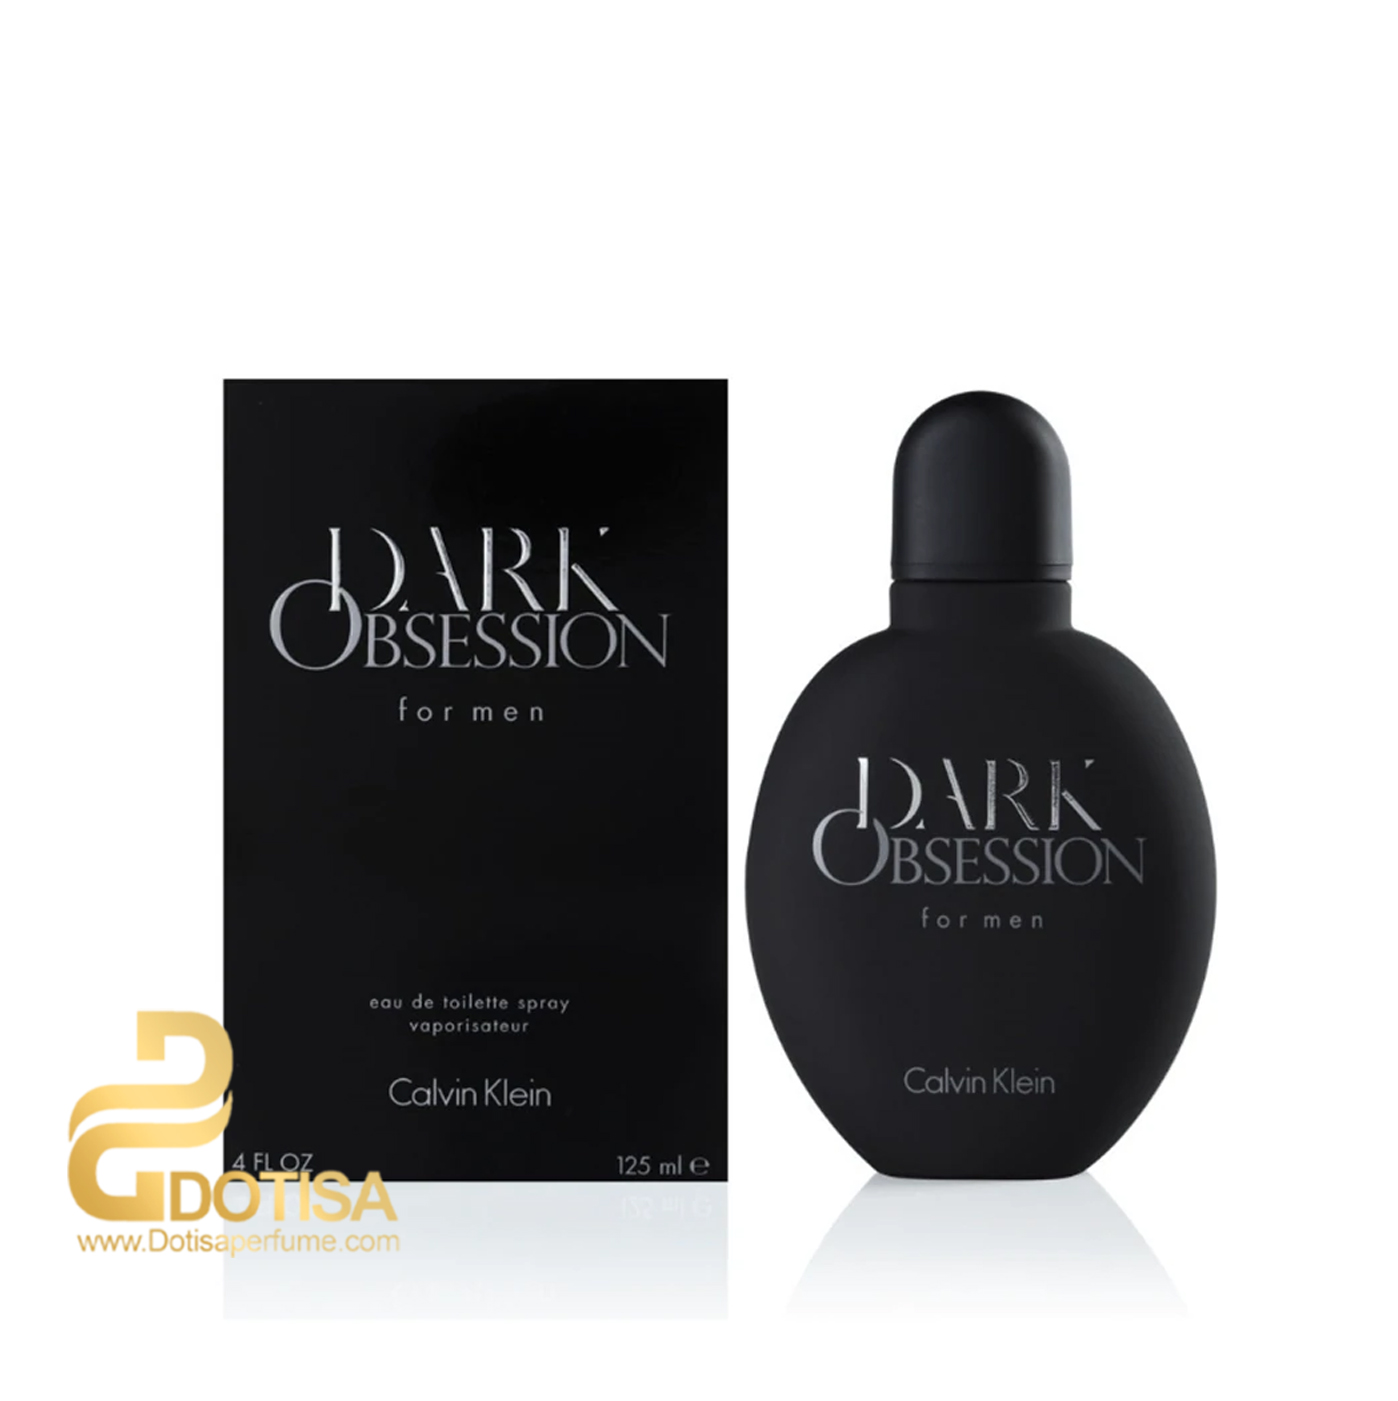 عطر ادکلن کالوین کین دارک آبسشن | Dark Obsession Calvin Klein for men